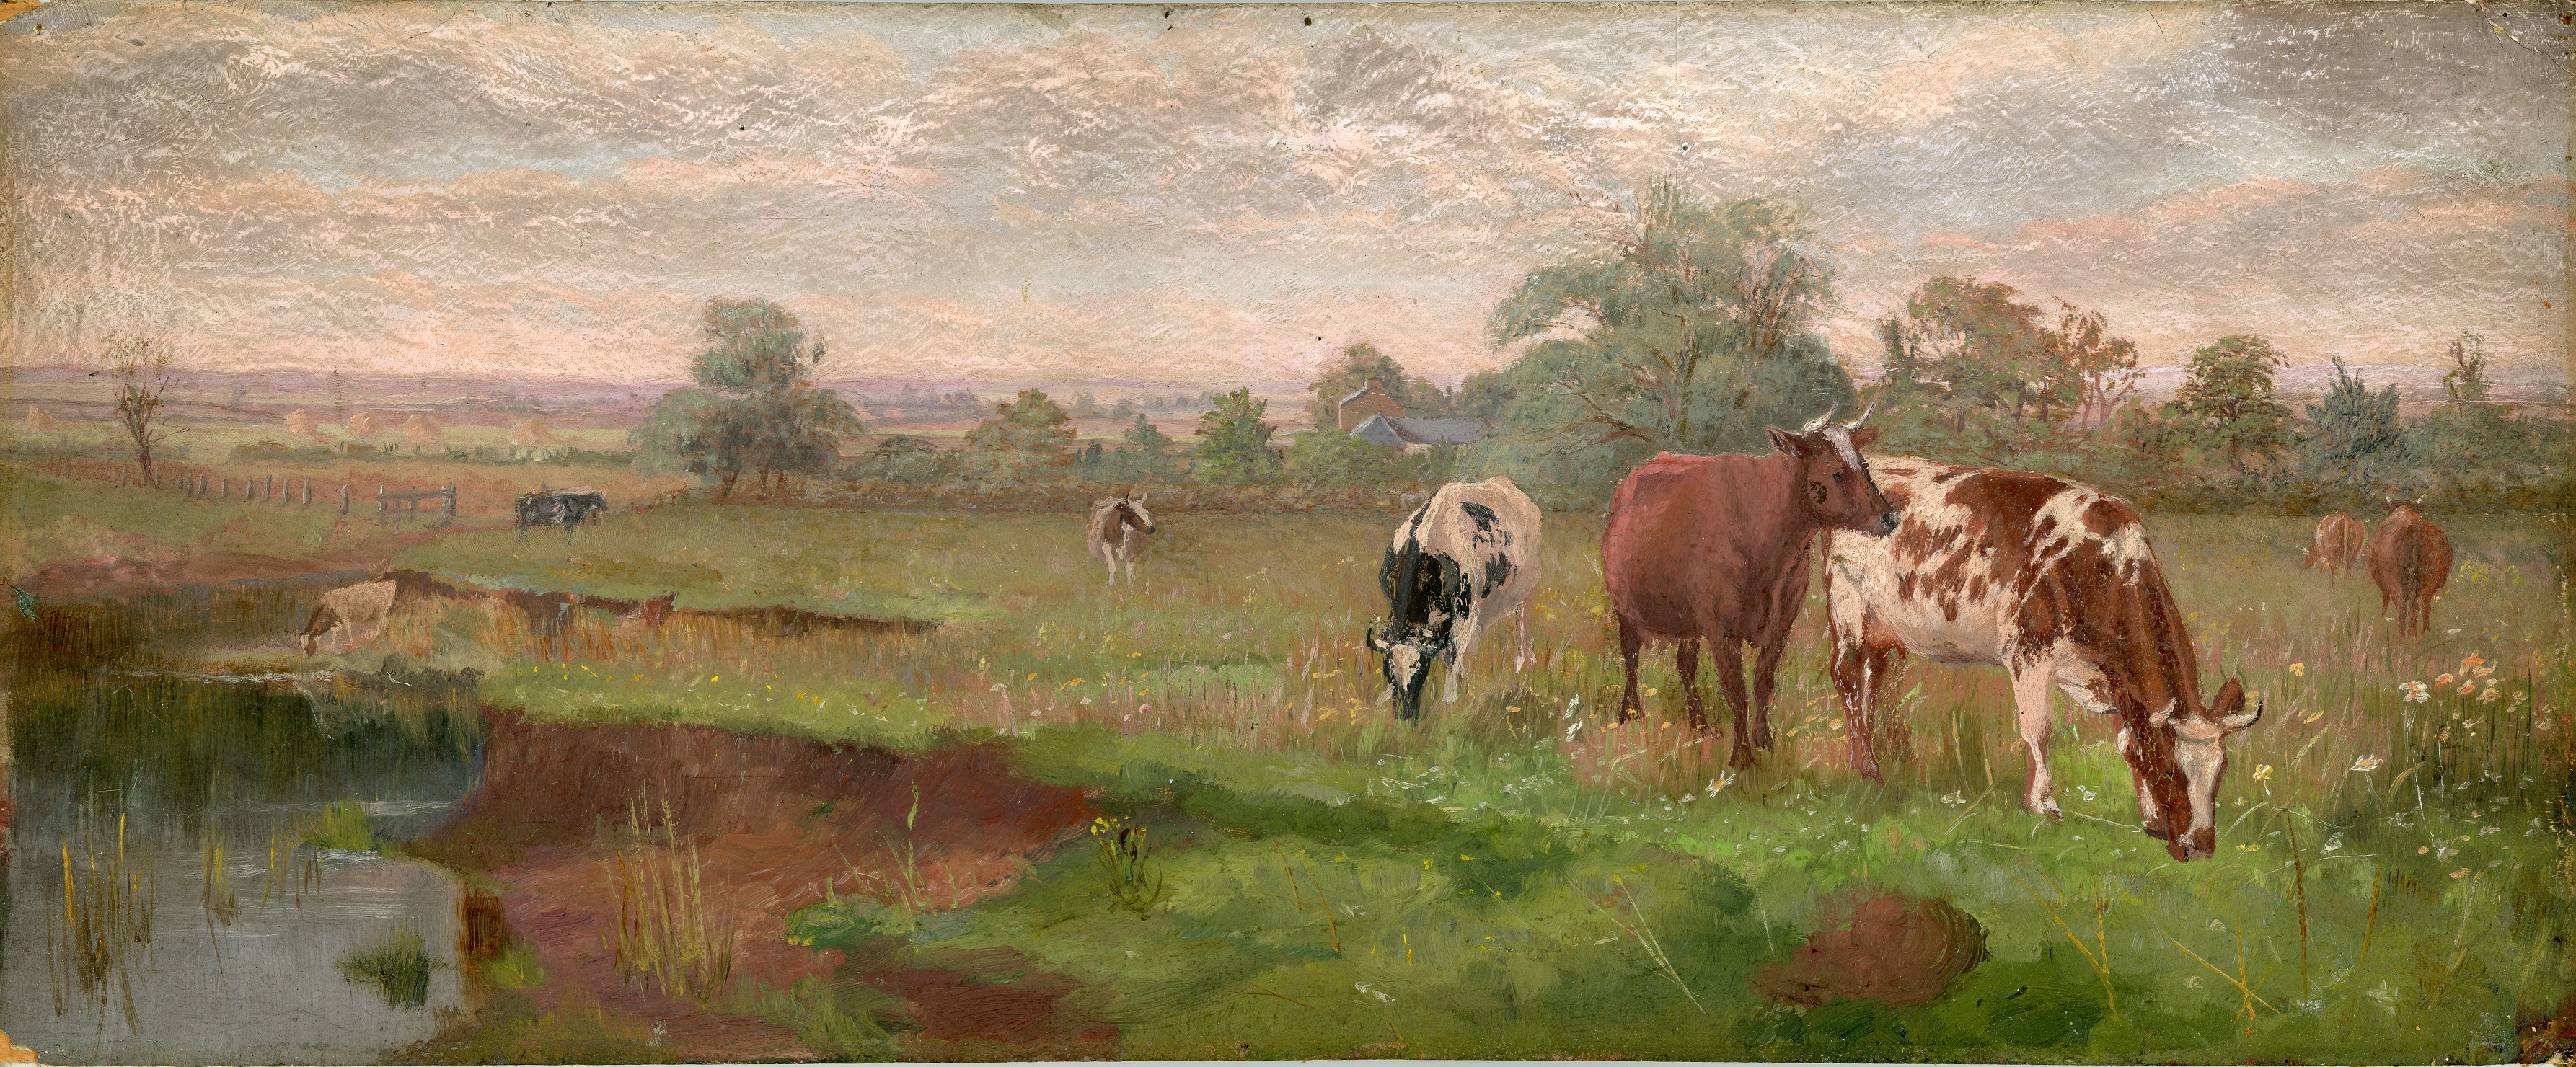 cows in a field alex lightbody